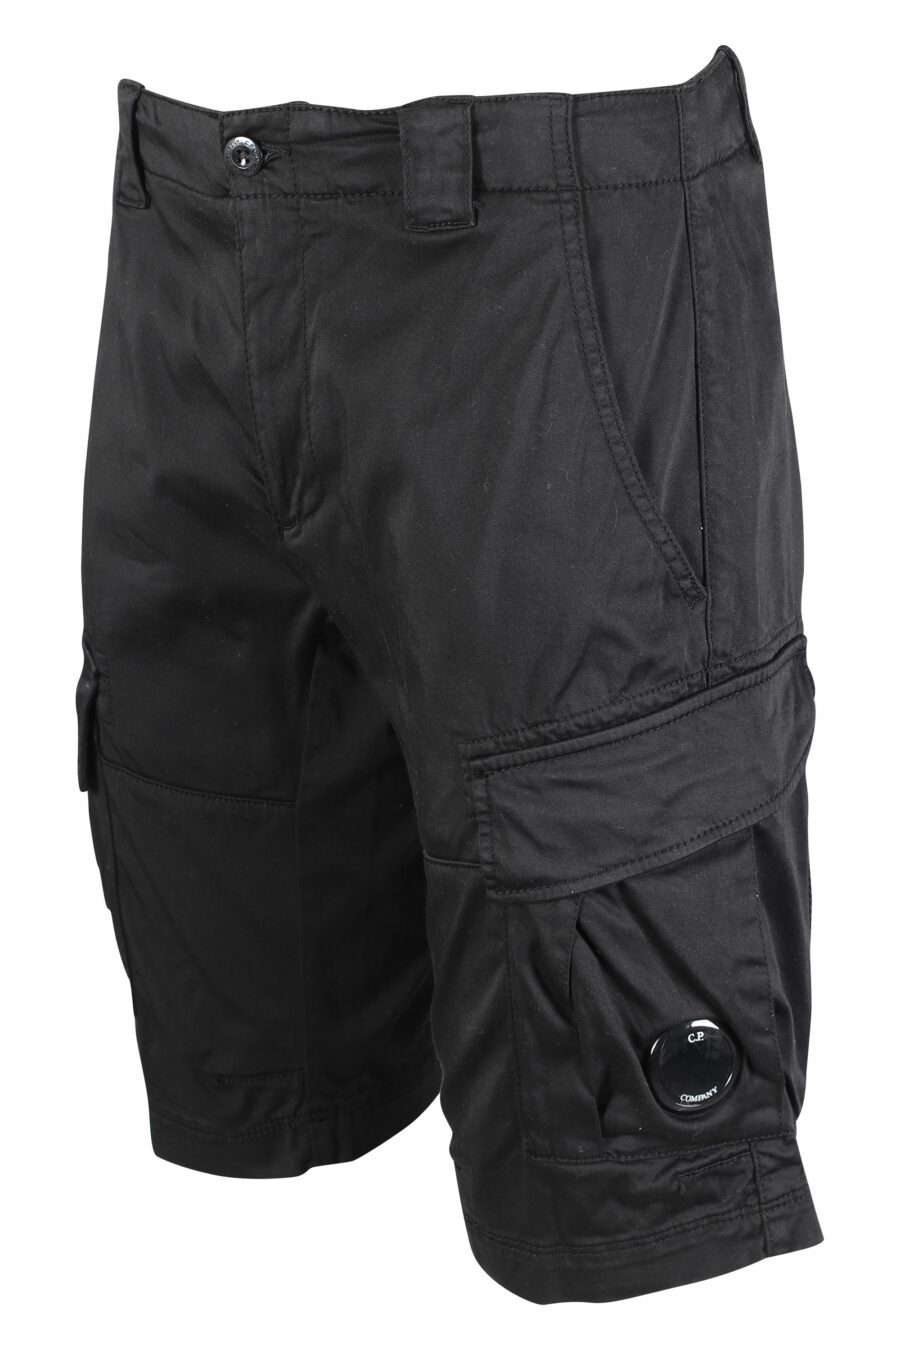 Pantalón corto negro estilo cargo con minilogo circular - IMG 9469